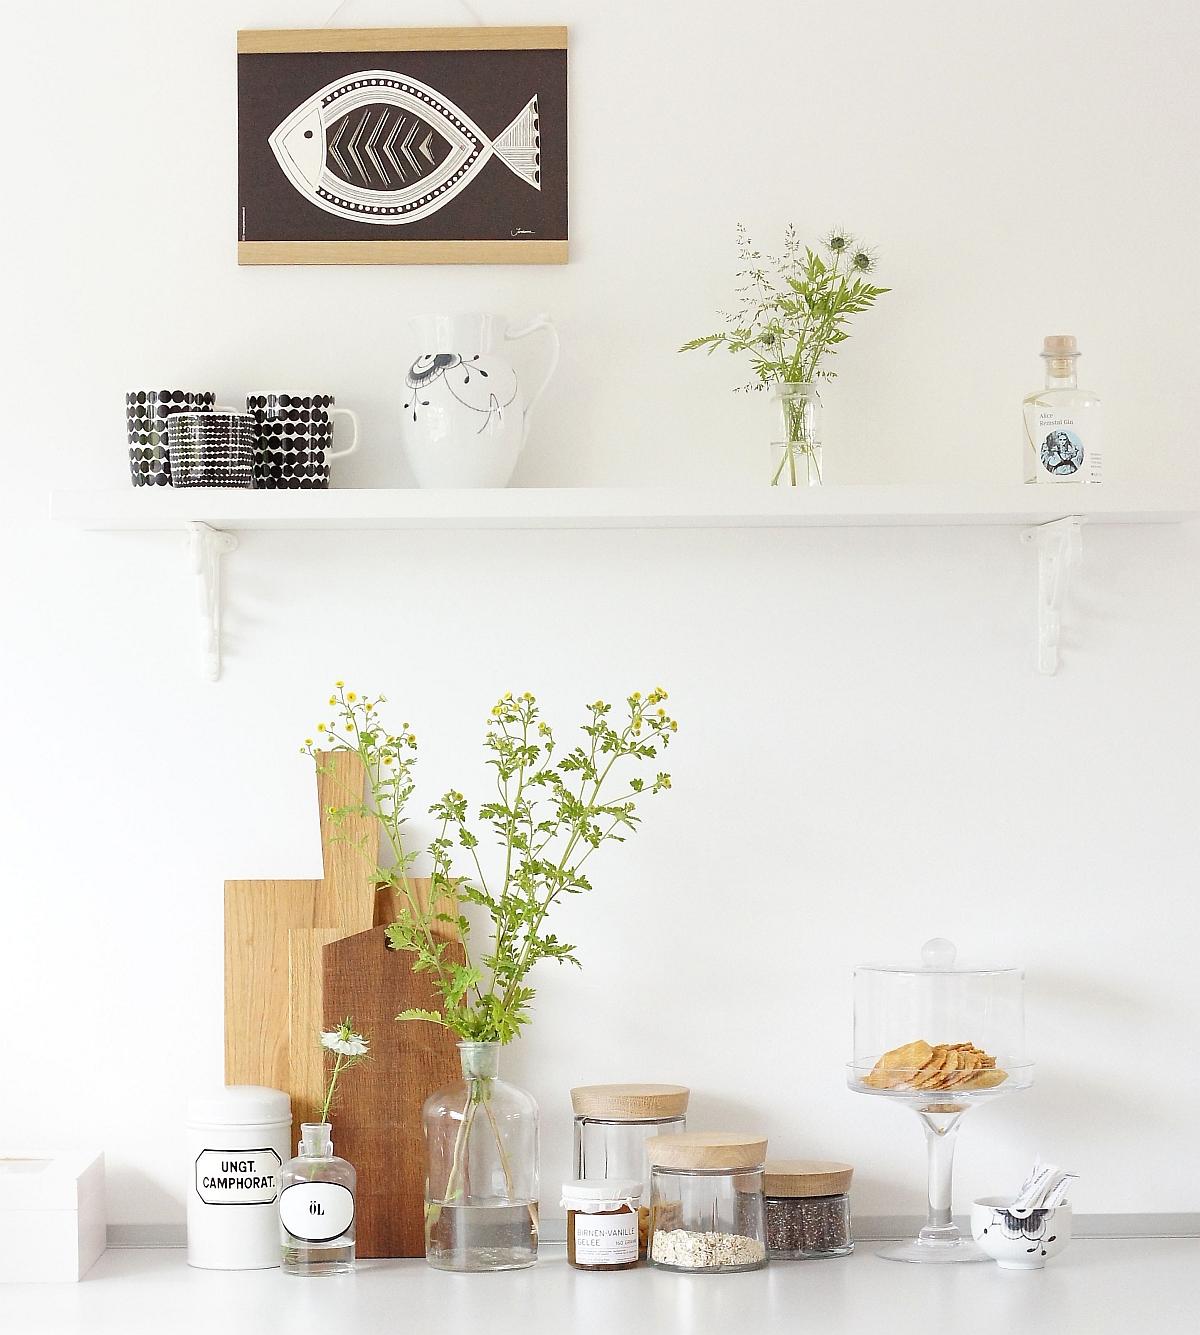 Holz trifft Glas - Deko für die Küche #poster #holzbrett #glasvase #zimmergestaltung ©Sabine Wittig